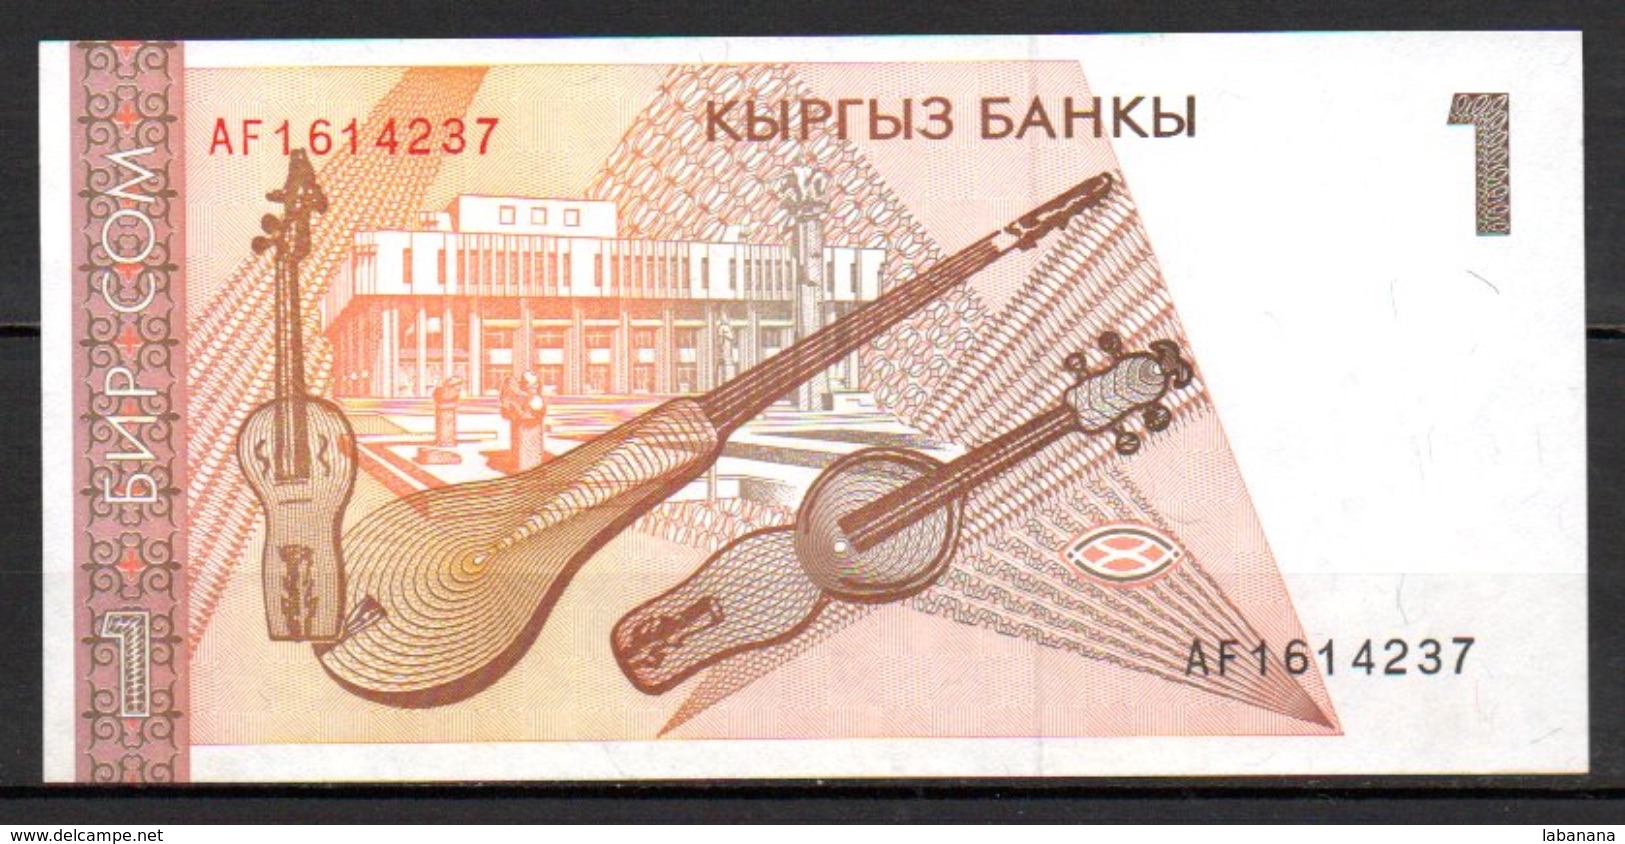 591-Kirghizistan Billet De 1 Sum 1994 AF161 Neuf - Kirghizistan